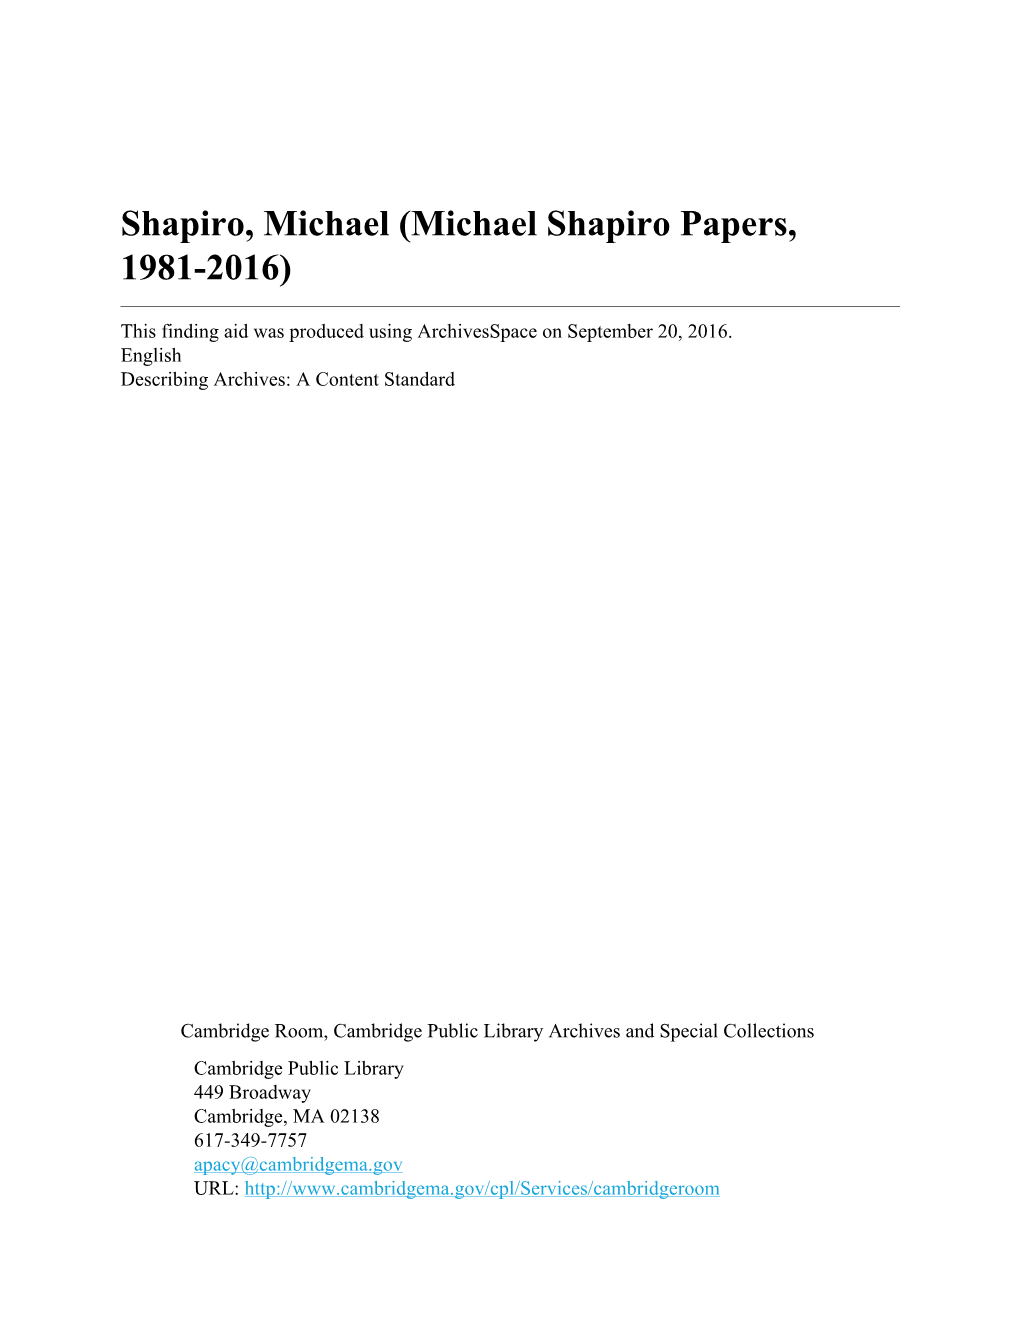 Shapiro, Michael (Michael Shapiro Papers, 1981-2016)